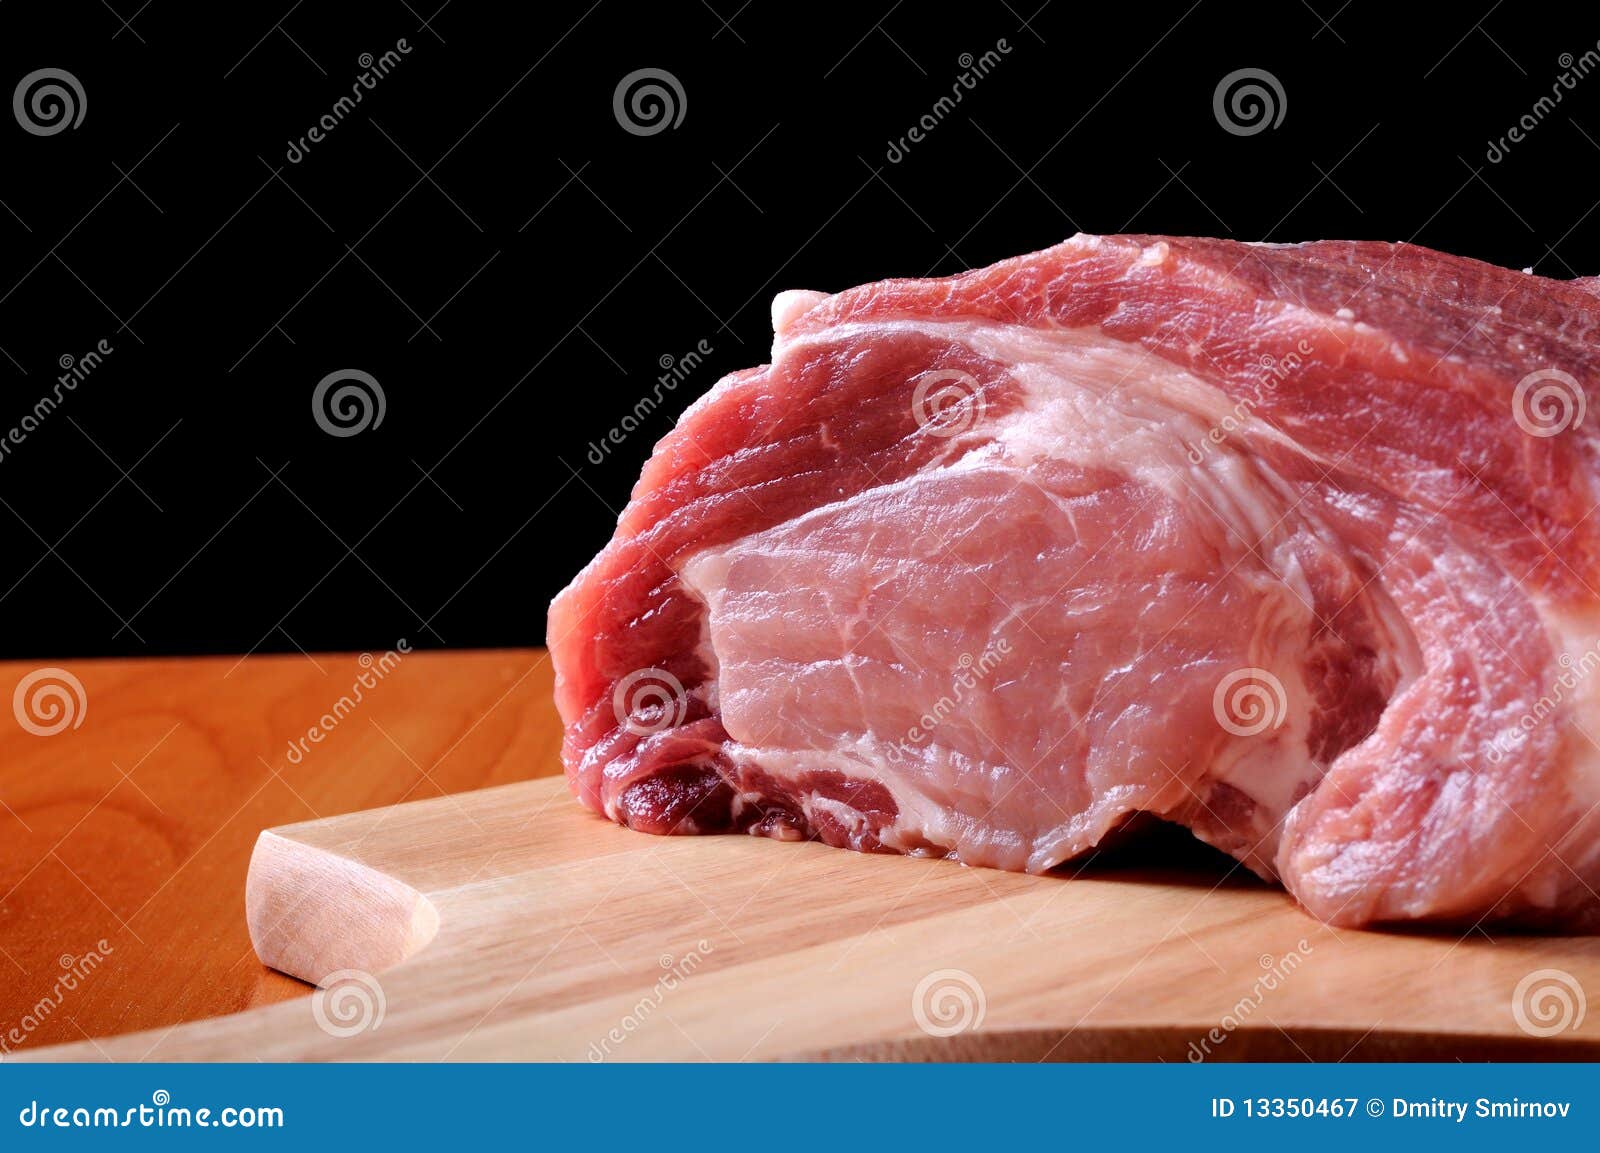 boneless leg of pork